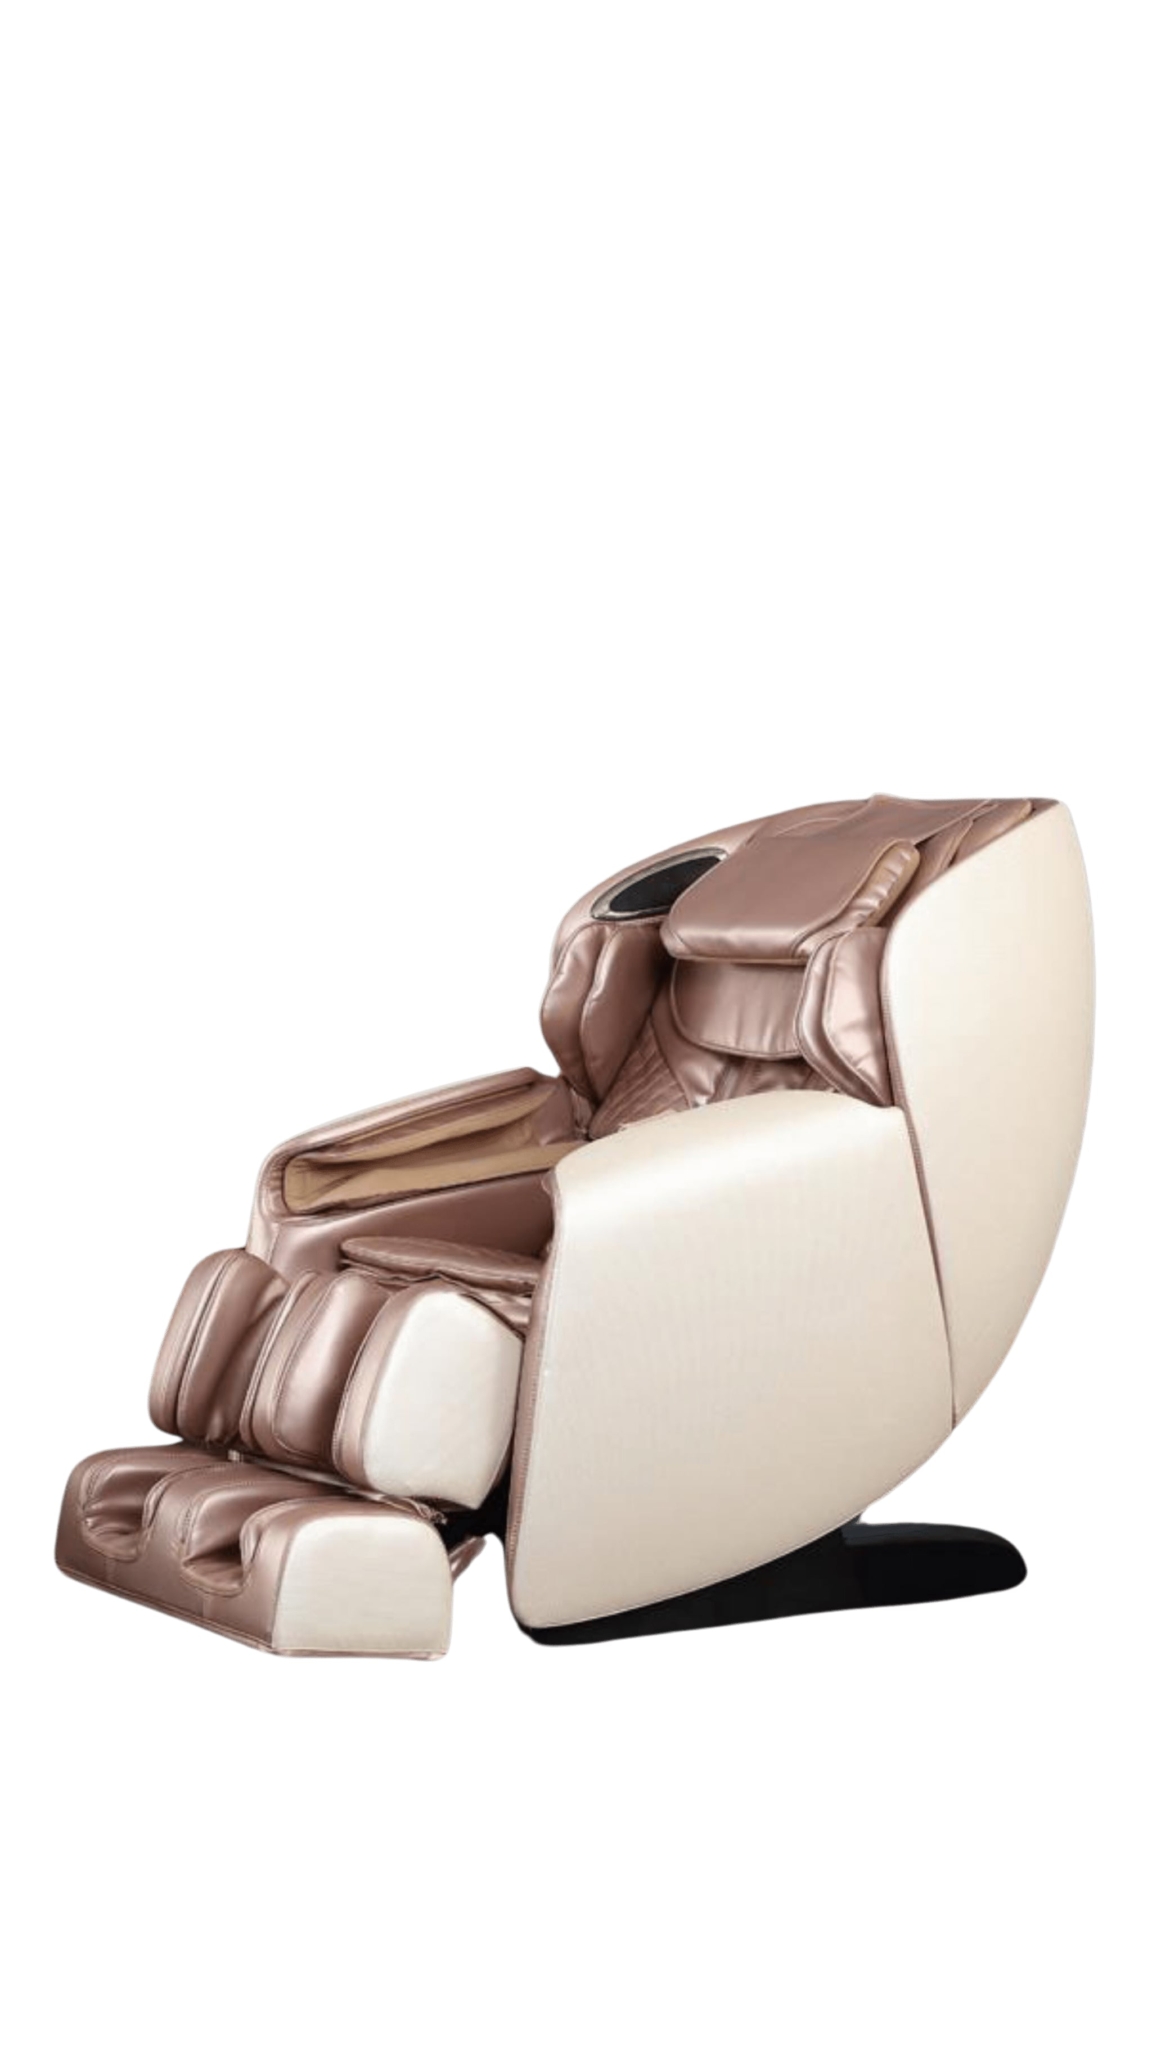 Massage Chair Luxy